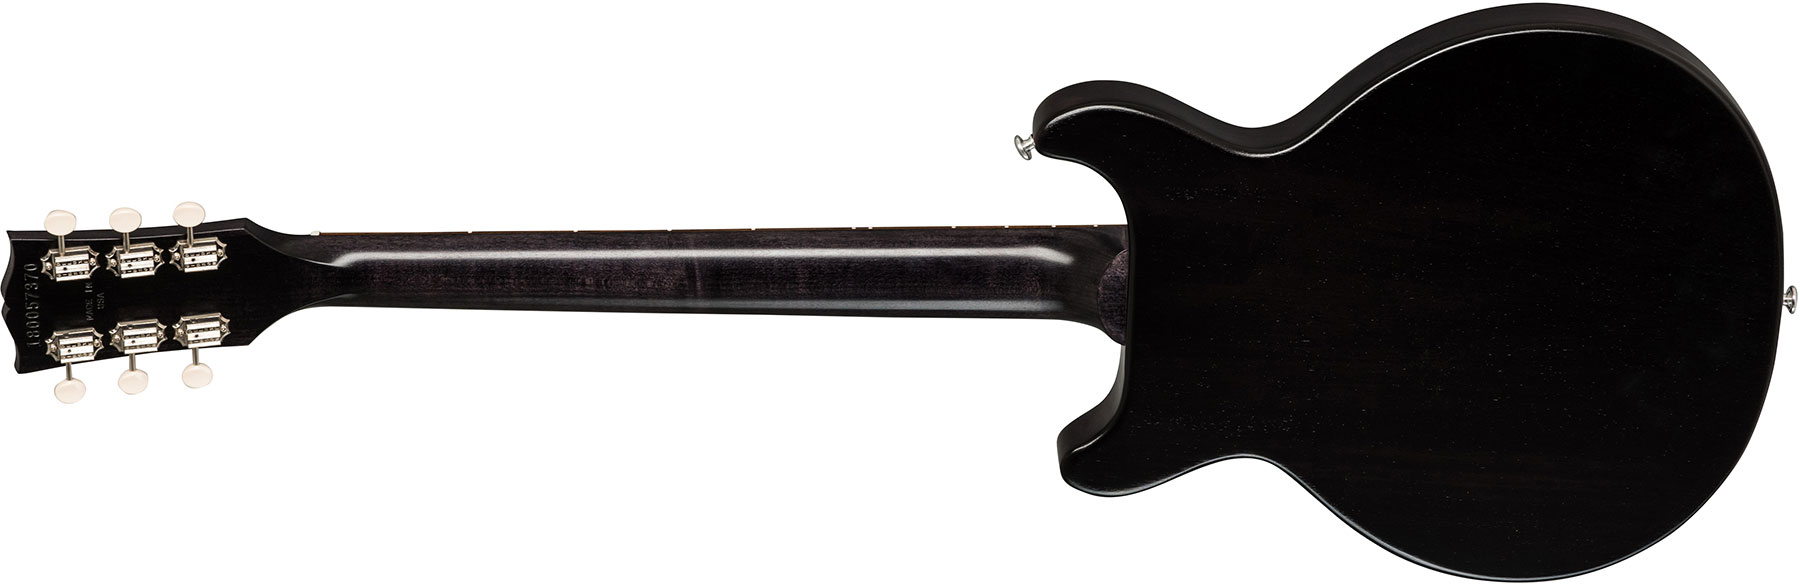 Gibson Les Paul Junior Dc Tribute 2019 P90 Ht Rw - Worn Ebony - Guitare Électrique Single Cut - Variation 2